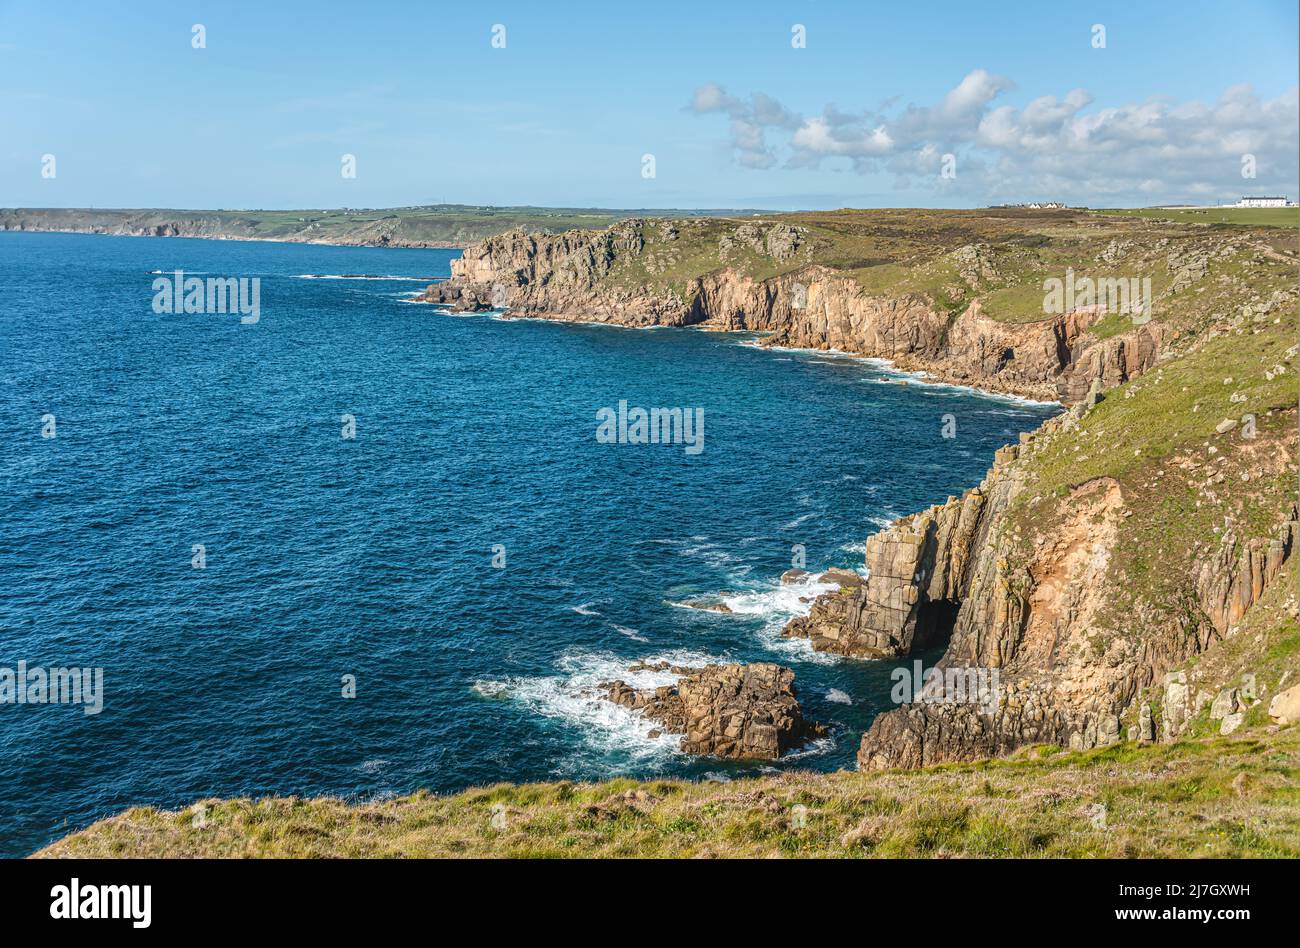 Le paysage côtier pittoresque des terres se termine en été, Cornwall, Angleterre, Royaume-Uni Banque D'Images